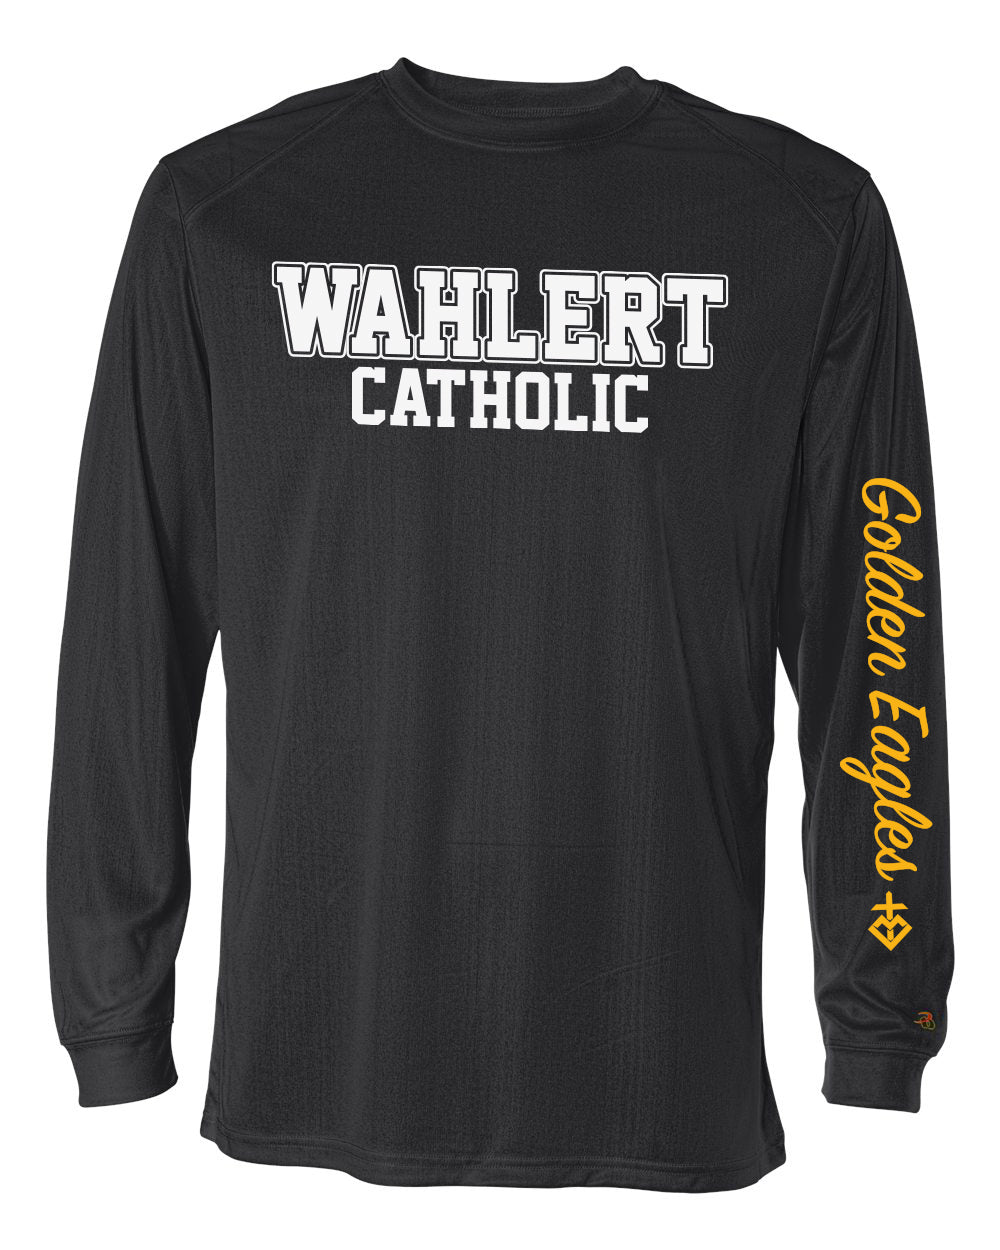 4104 - WAHLERT CATHOLIC BLOCK SPIRIT  - Adult Badger BCore Long Sleeve TShirt